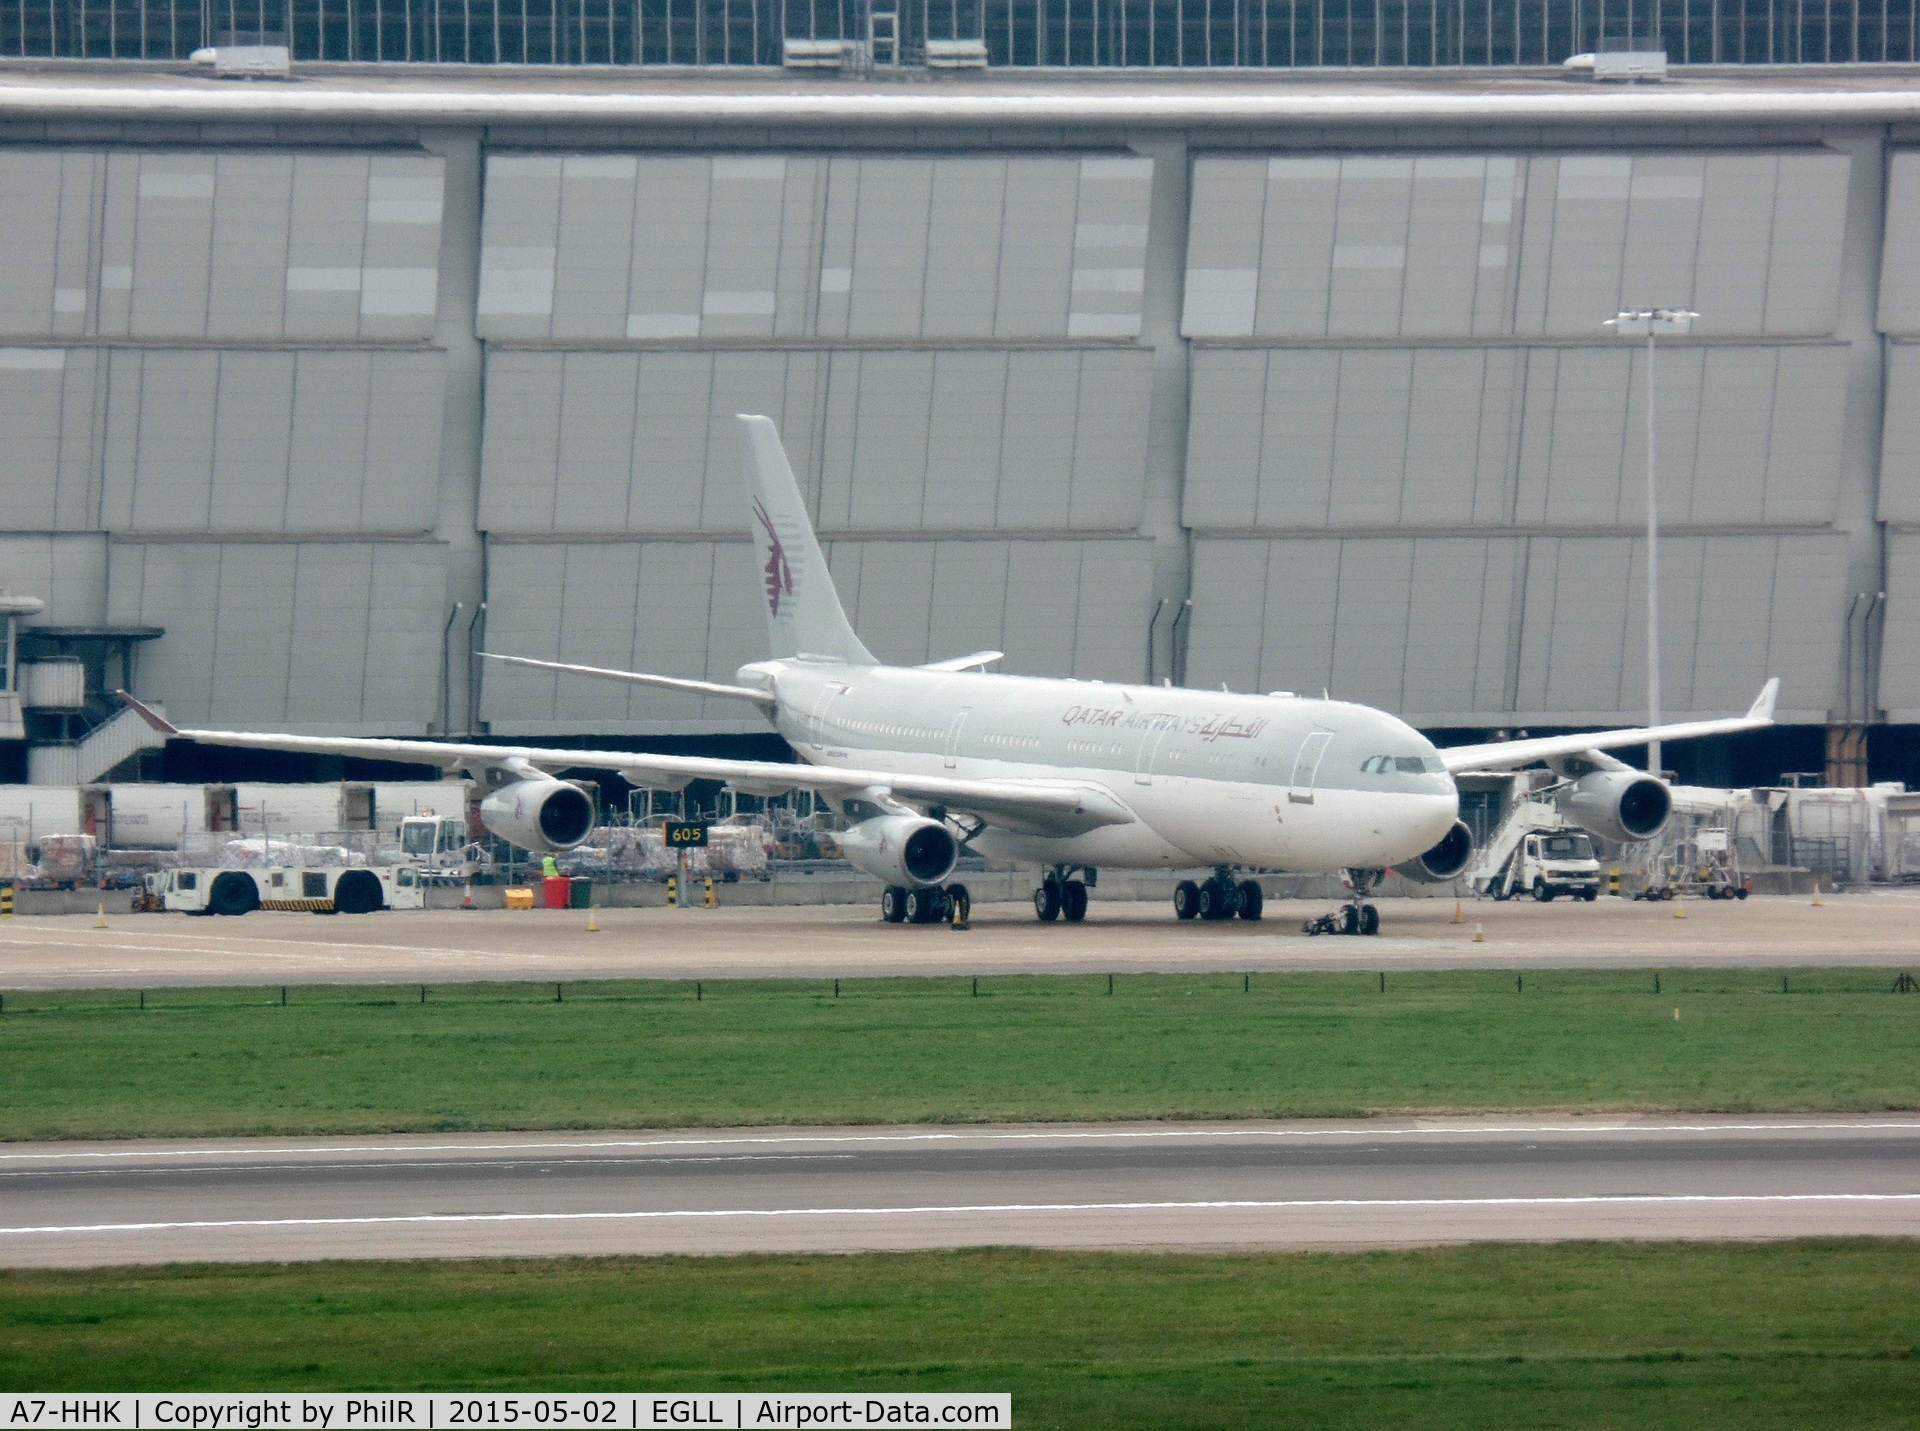 A7-HHK, 1993 Airbus A340-211 C/N 026, A7-HHK 1993 Airbus A340-200 Qatar Amiri Flight Heathrow